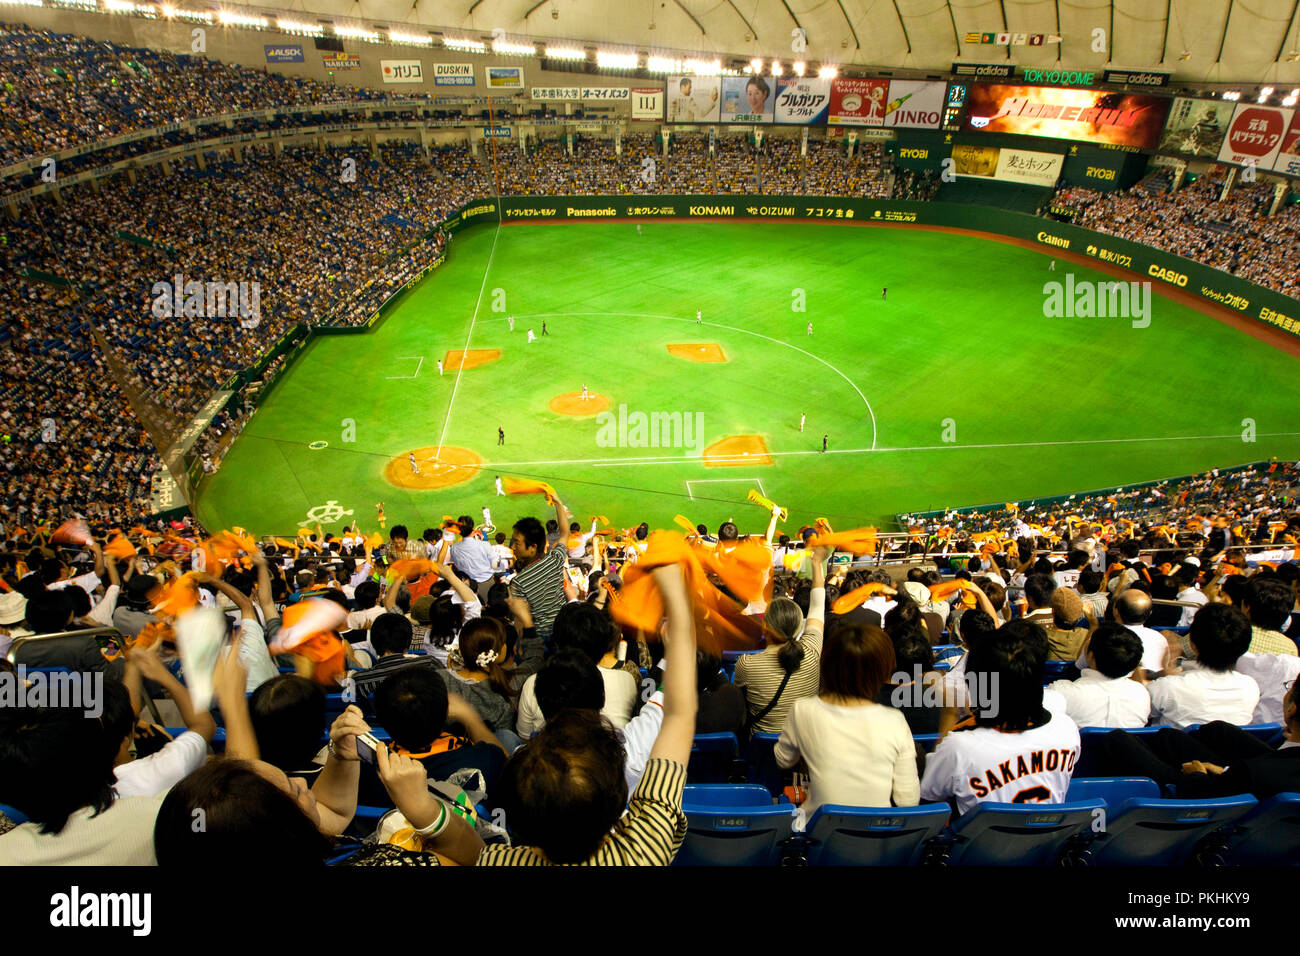 Tokyo Dome Baseball Stadium in Tokio am Sept. 17, 2009. Fans wave orange Banner für Ihre Mannschaft die Yomiuri Giants. Weitwinkel Ansicht von oben Stockfoto